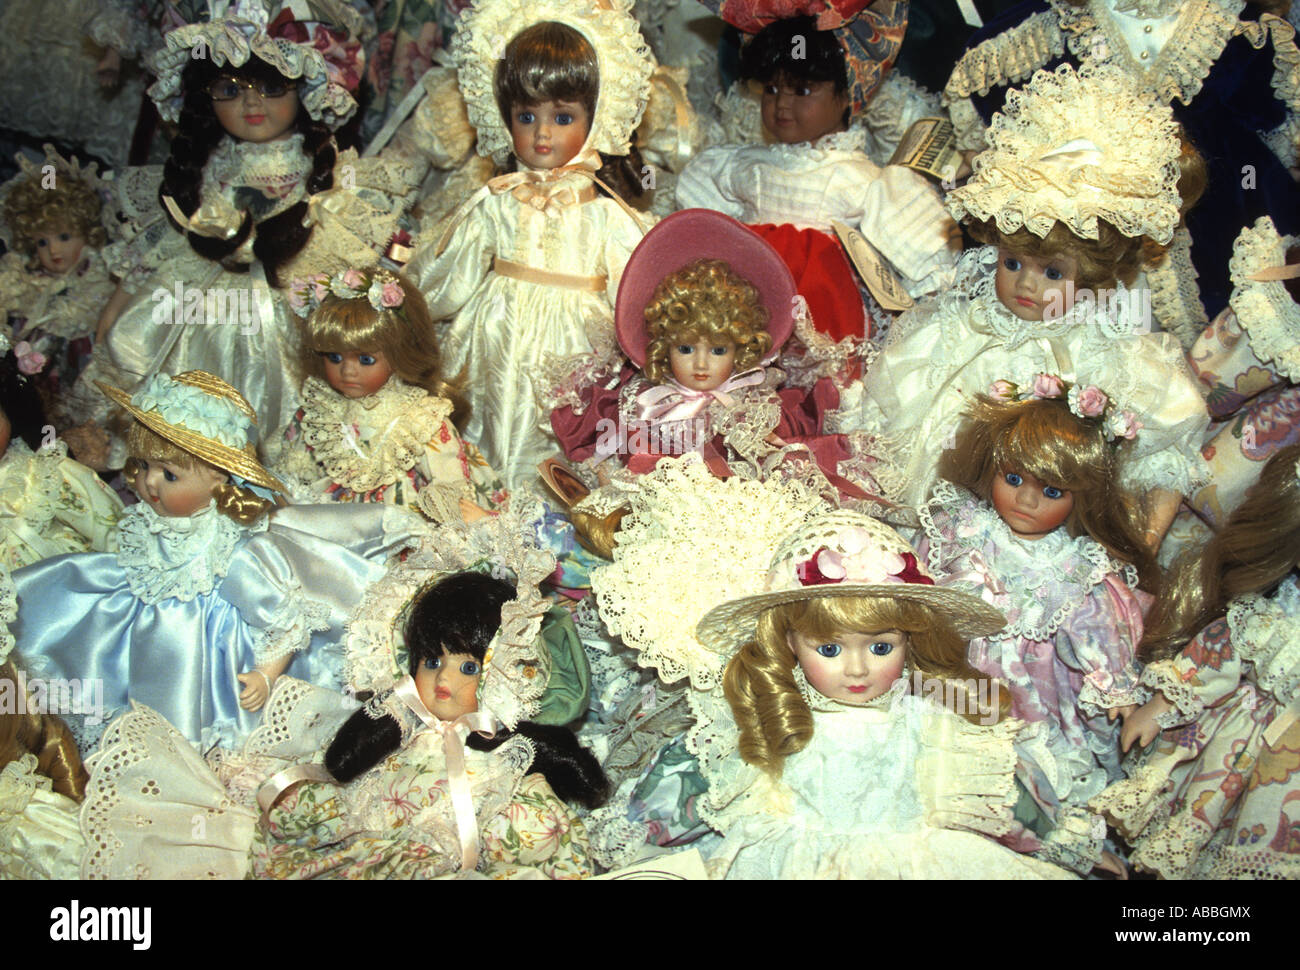 Visualización de hermosas muñecas de porcelana inglesa rostro exquisitamente vestida con sedas y encajes, Foto de stock